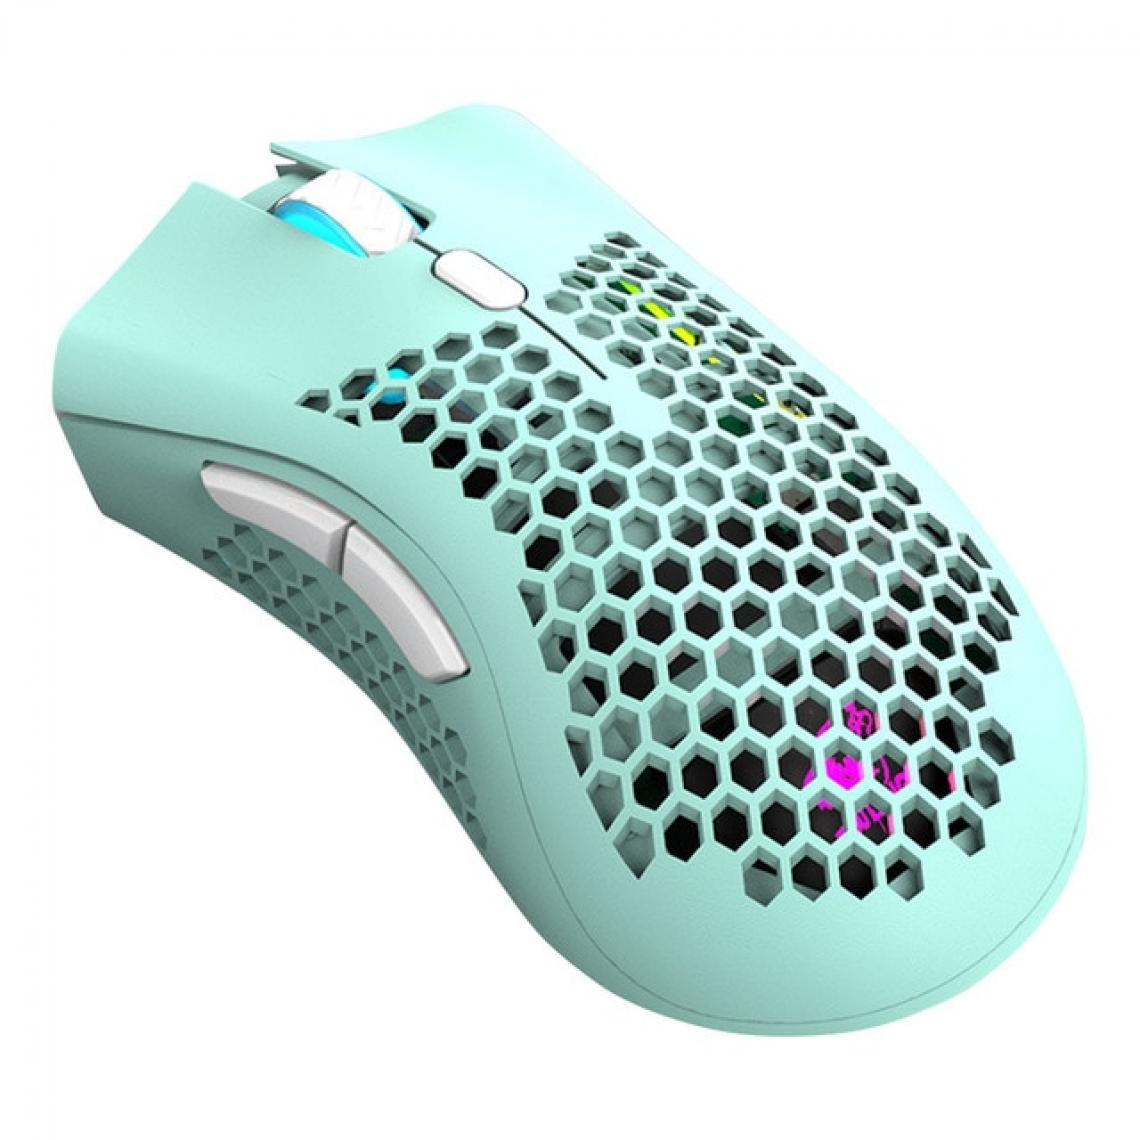 Universal - Souris gaming 2400 dpi coque cellulaire 2,4 GHz sans fil souris ergonomique rechargeable RVB trou lumineux souris gaming PC | Mouse (vert) - Souris